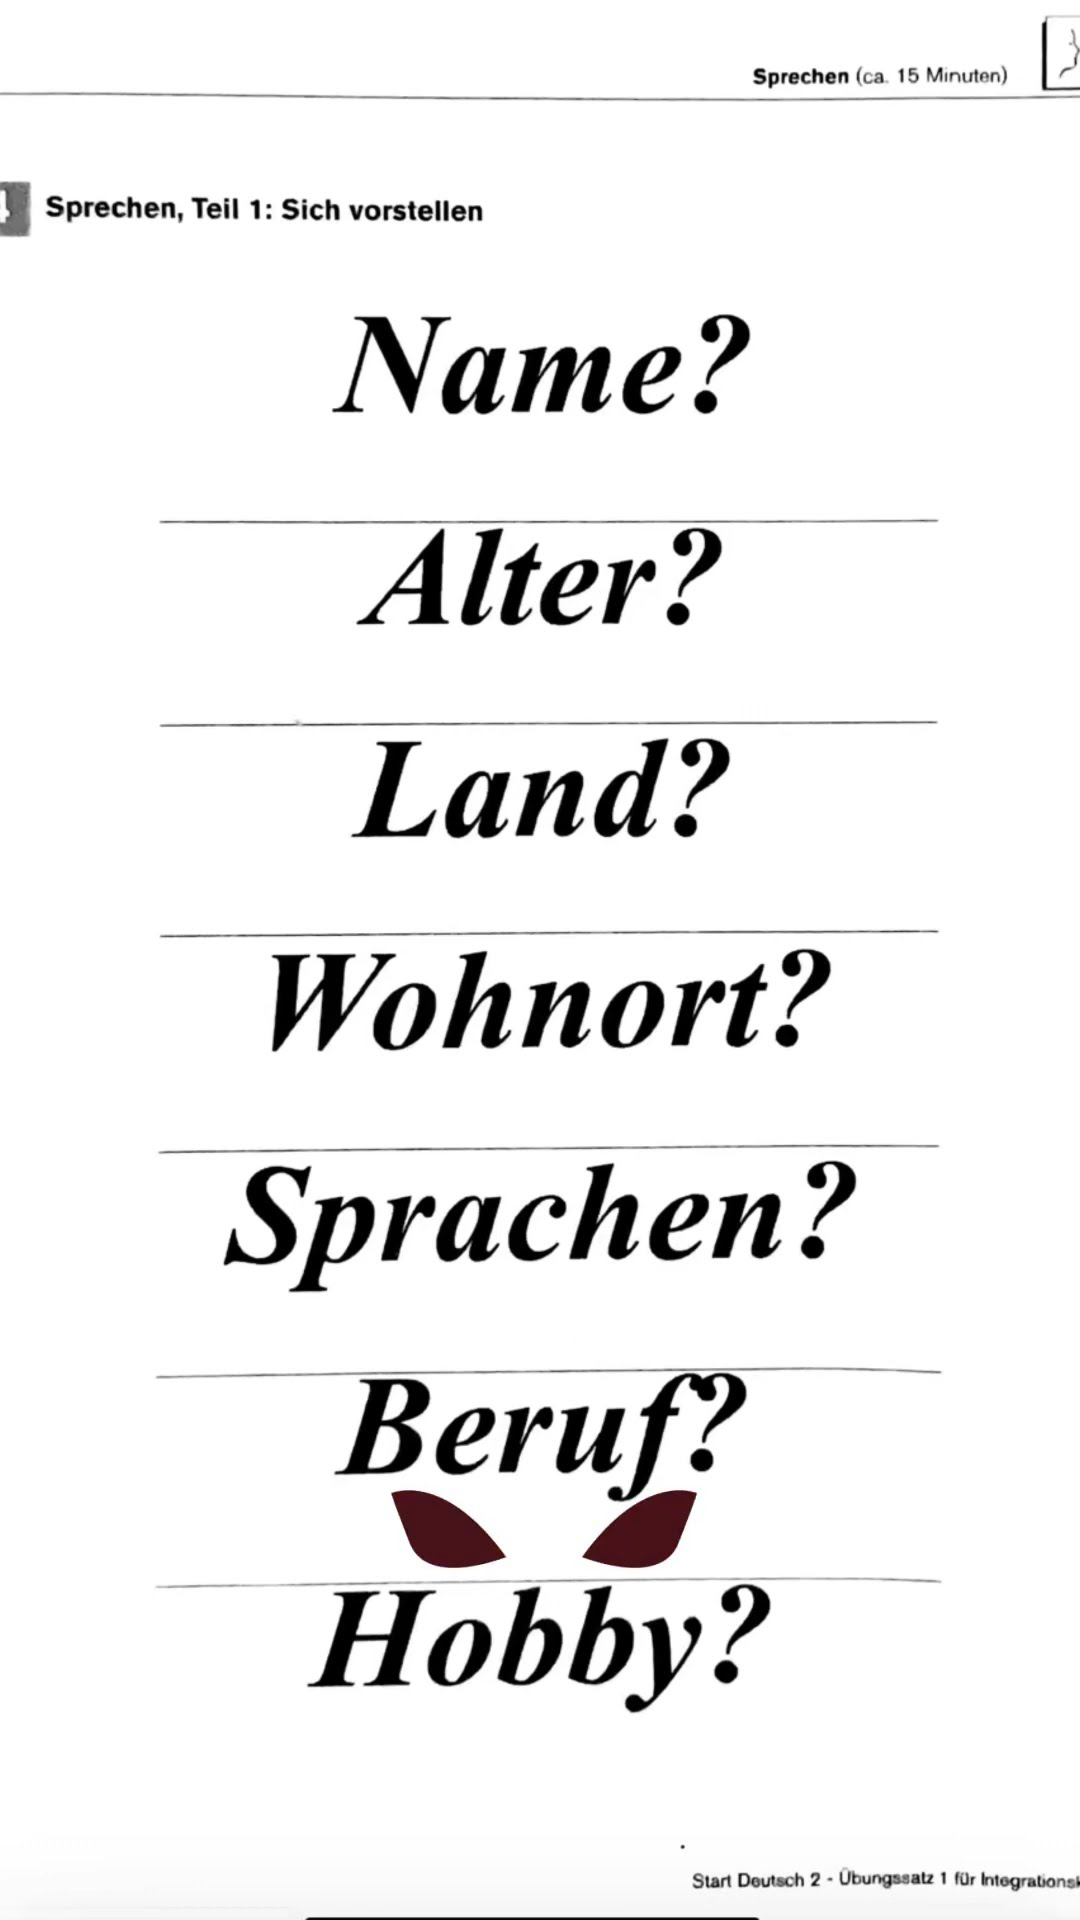 Deutsch lernen mit Dialogen B1, B2 | Satzstrukturen in Haupt- und Nebensätzen | Arbeit beschreiben